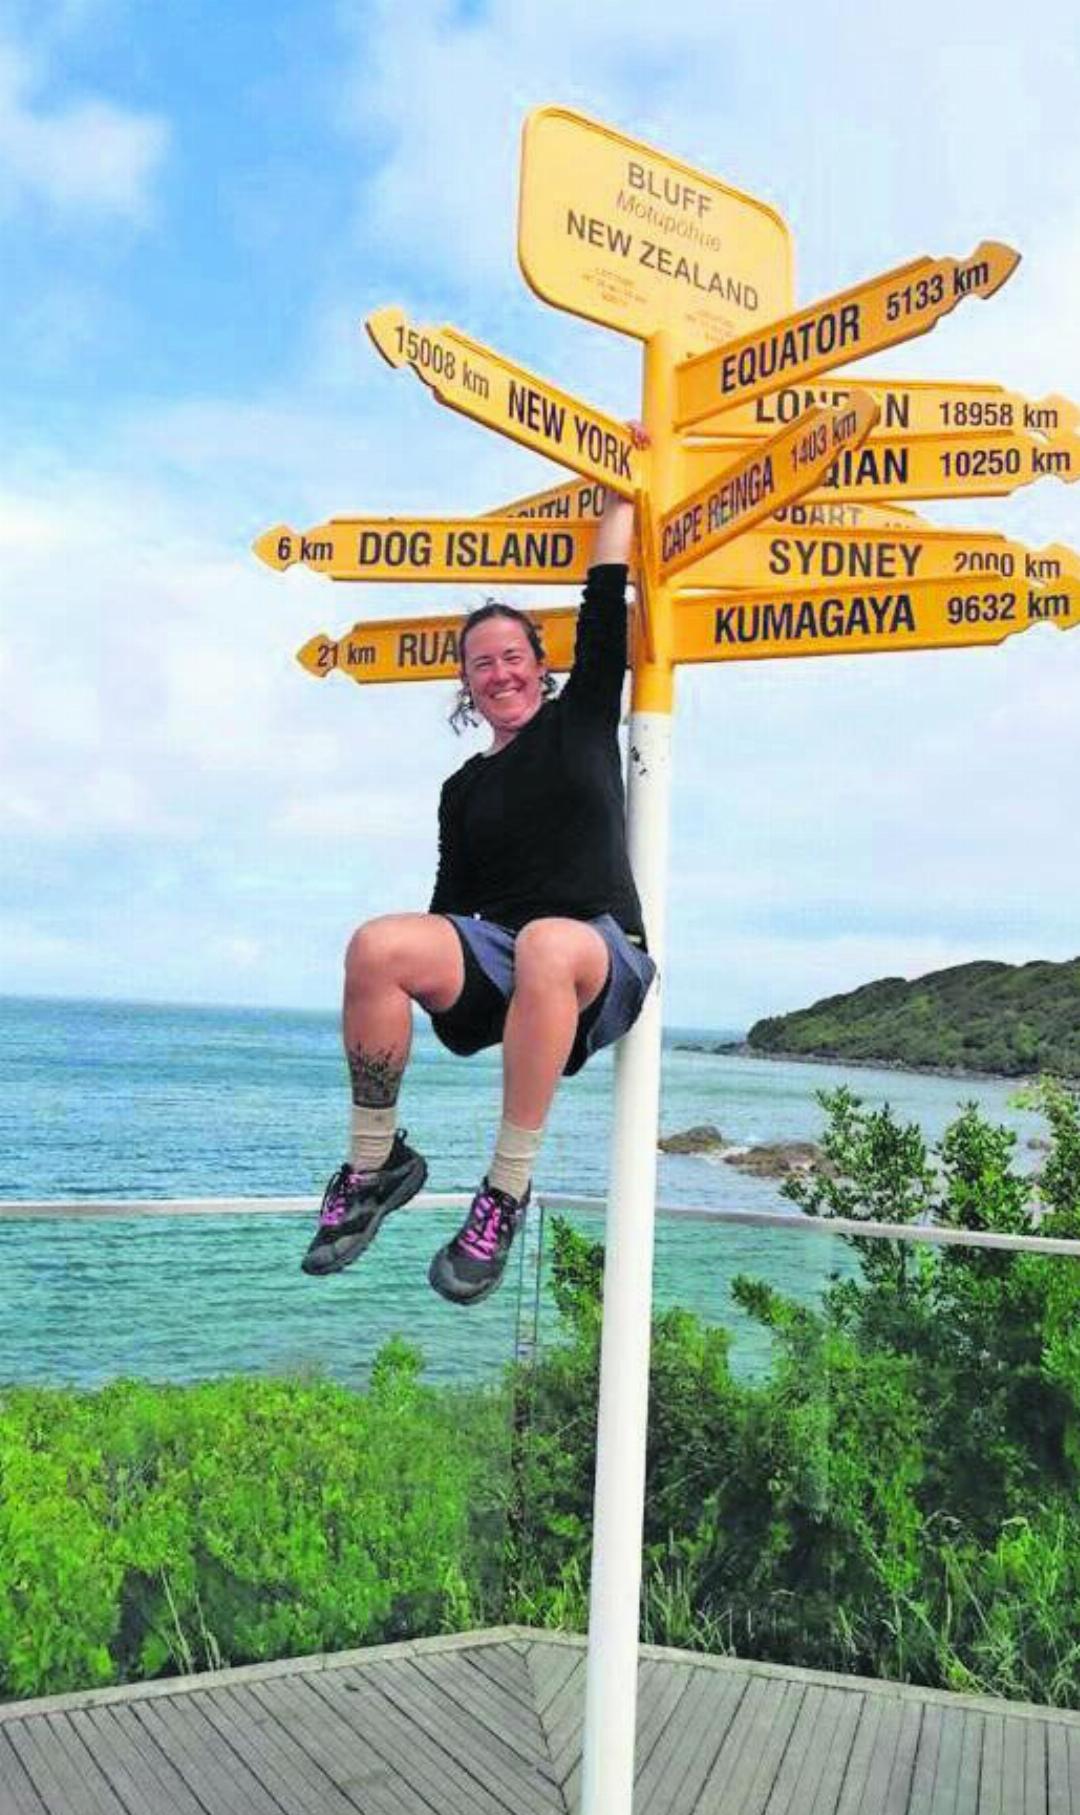 Nach 129 Tagen hat Maureen Füglistaler Bluff, den südlichsten Punkt Neuseelands, erreicht. Bild: zg